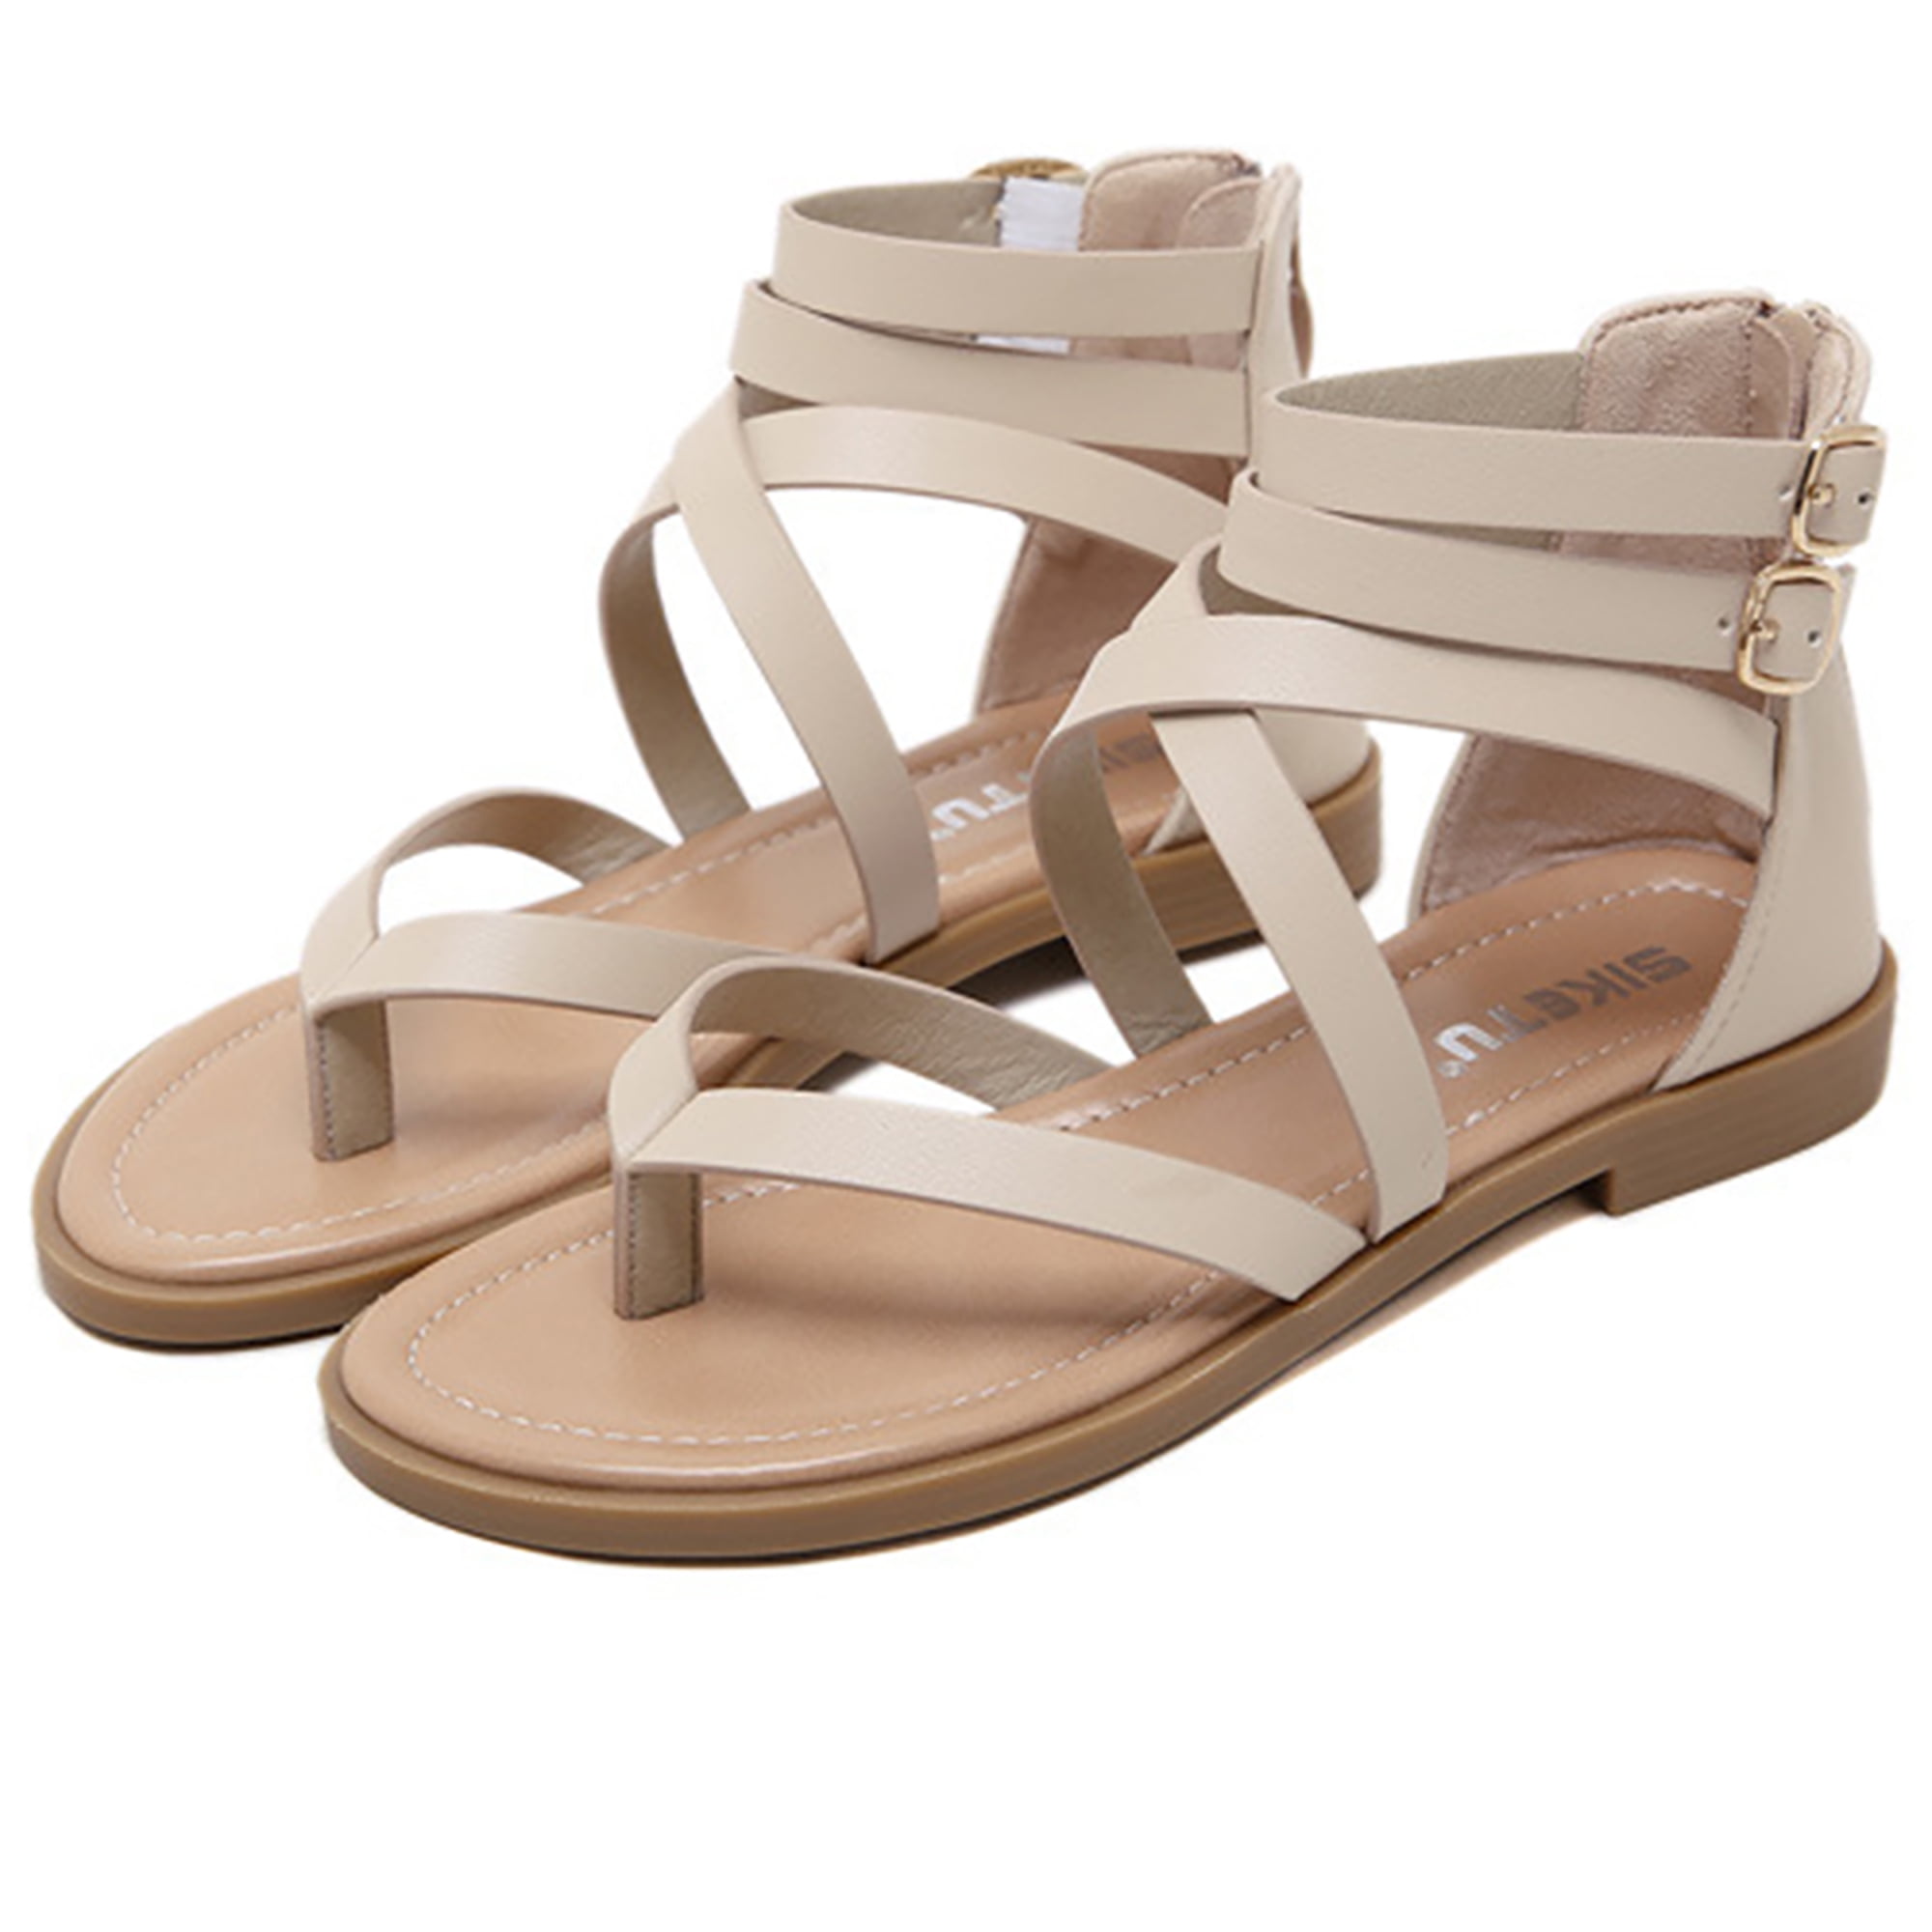 SHIBEVER Women Gladiator Sandals Summer Beach Thong Flat Roman Flip Flops Shoes Sandals with Zipper